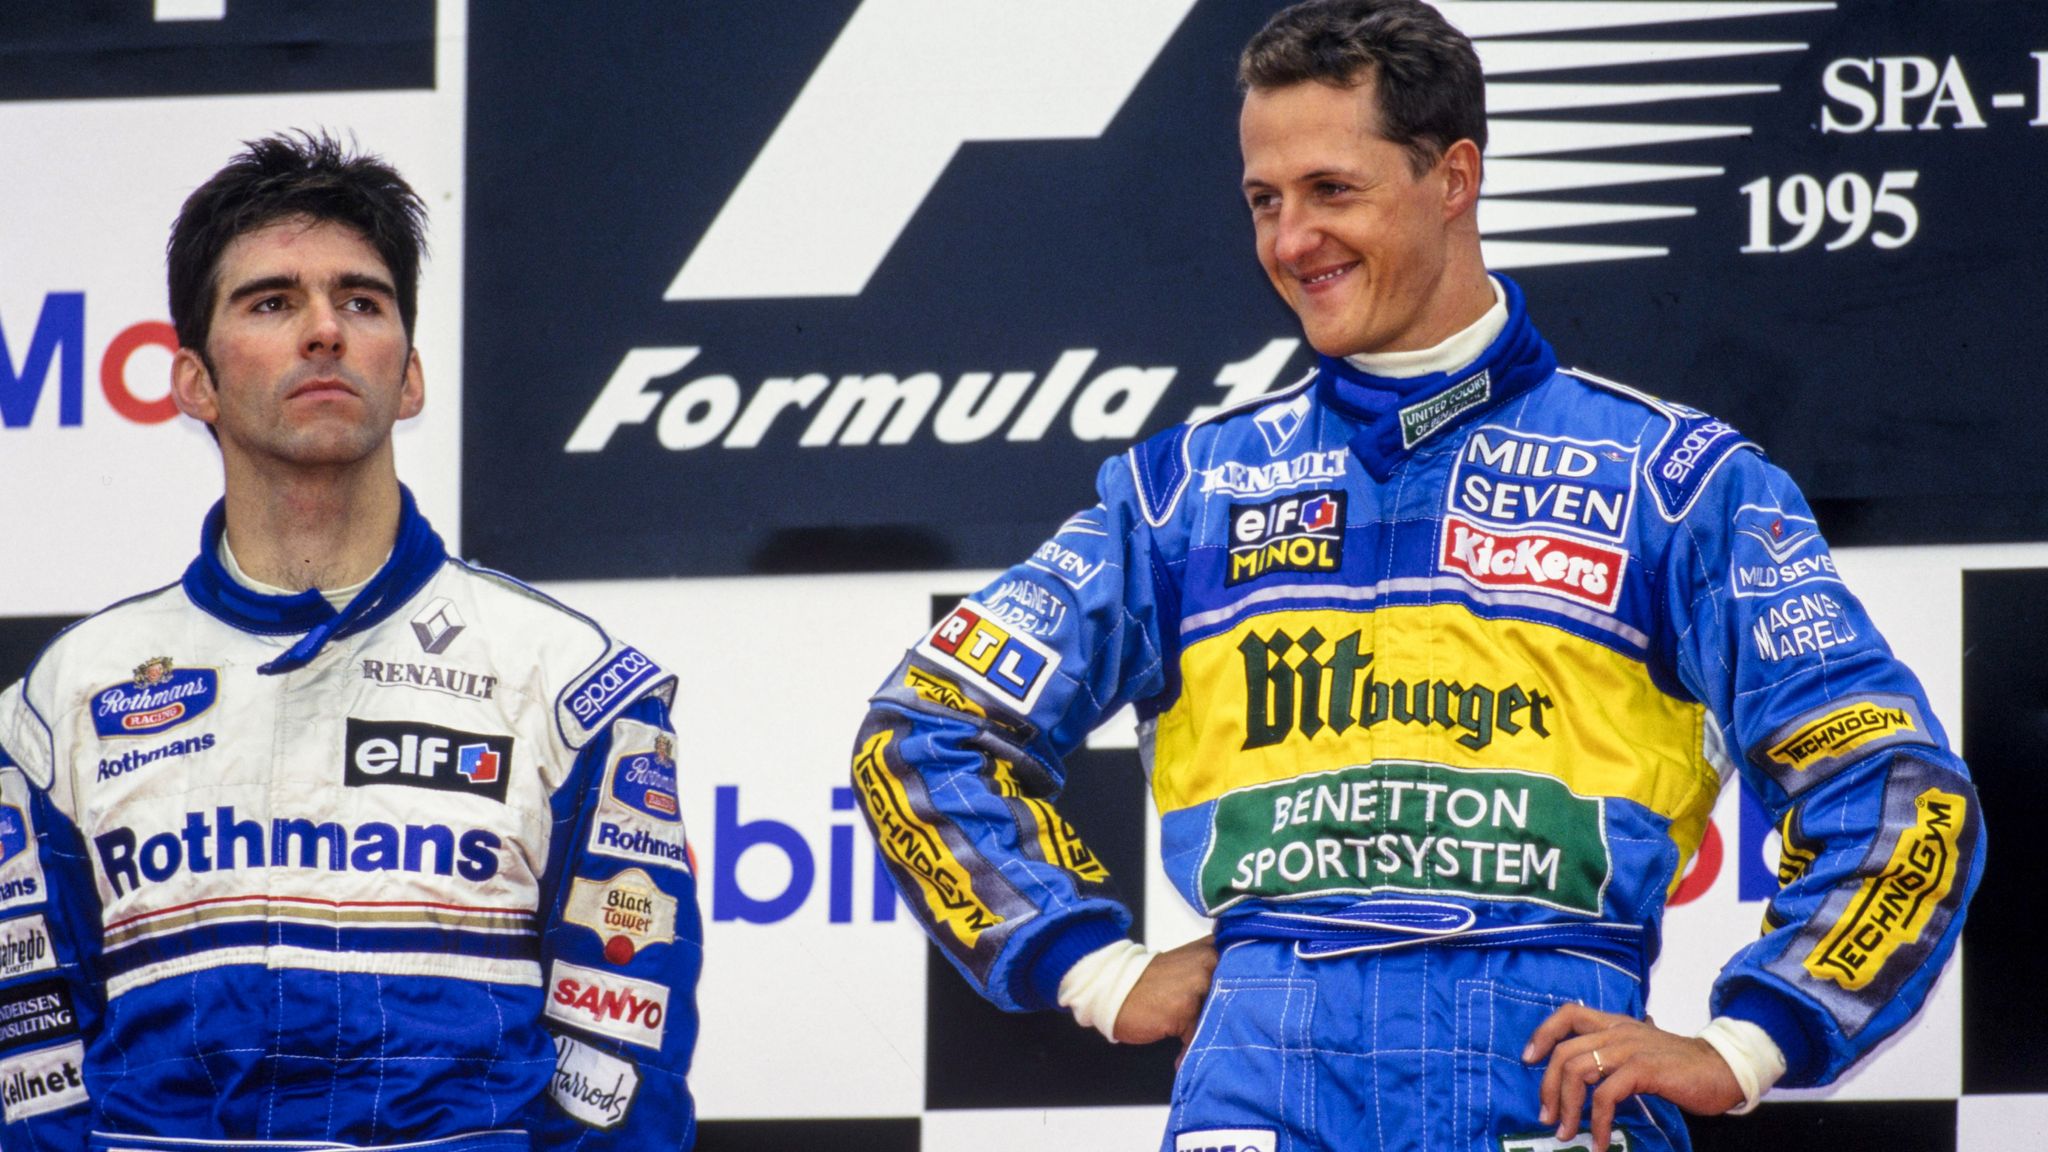 Temporada de Fórmula 1 em 1995, Schumacher vs Hill 1995 - by gettyimagem 